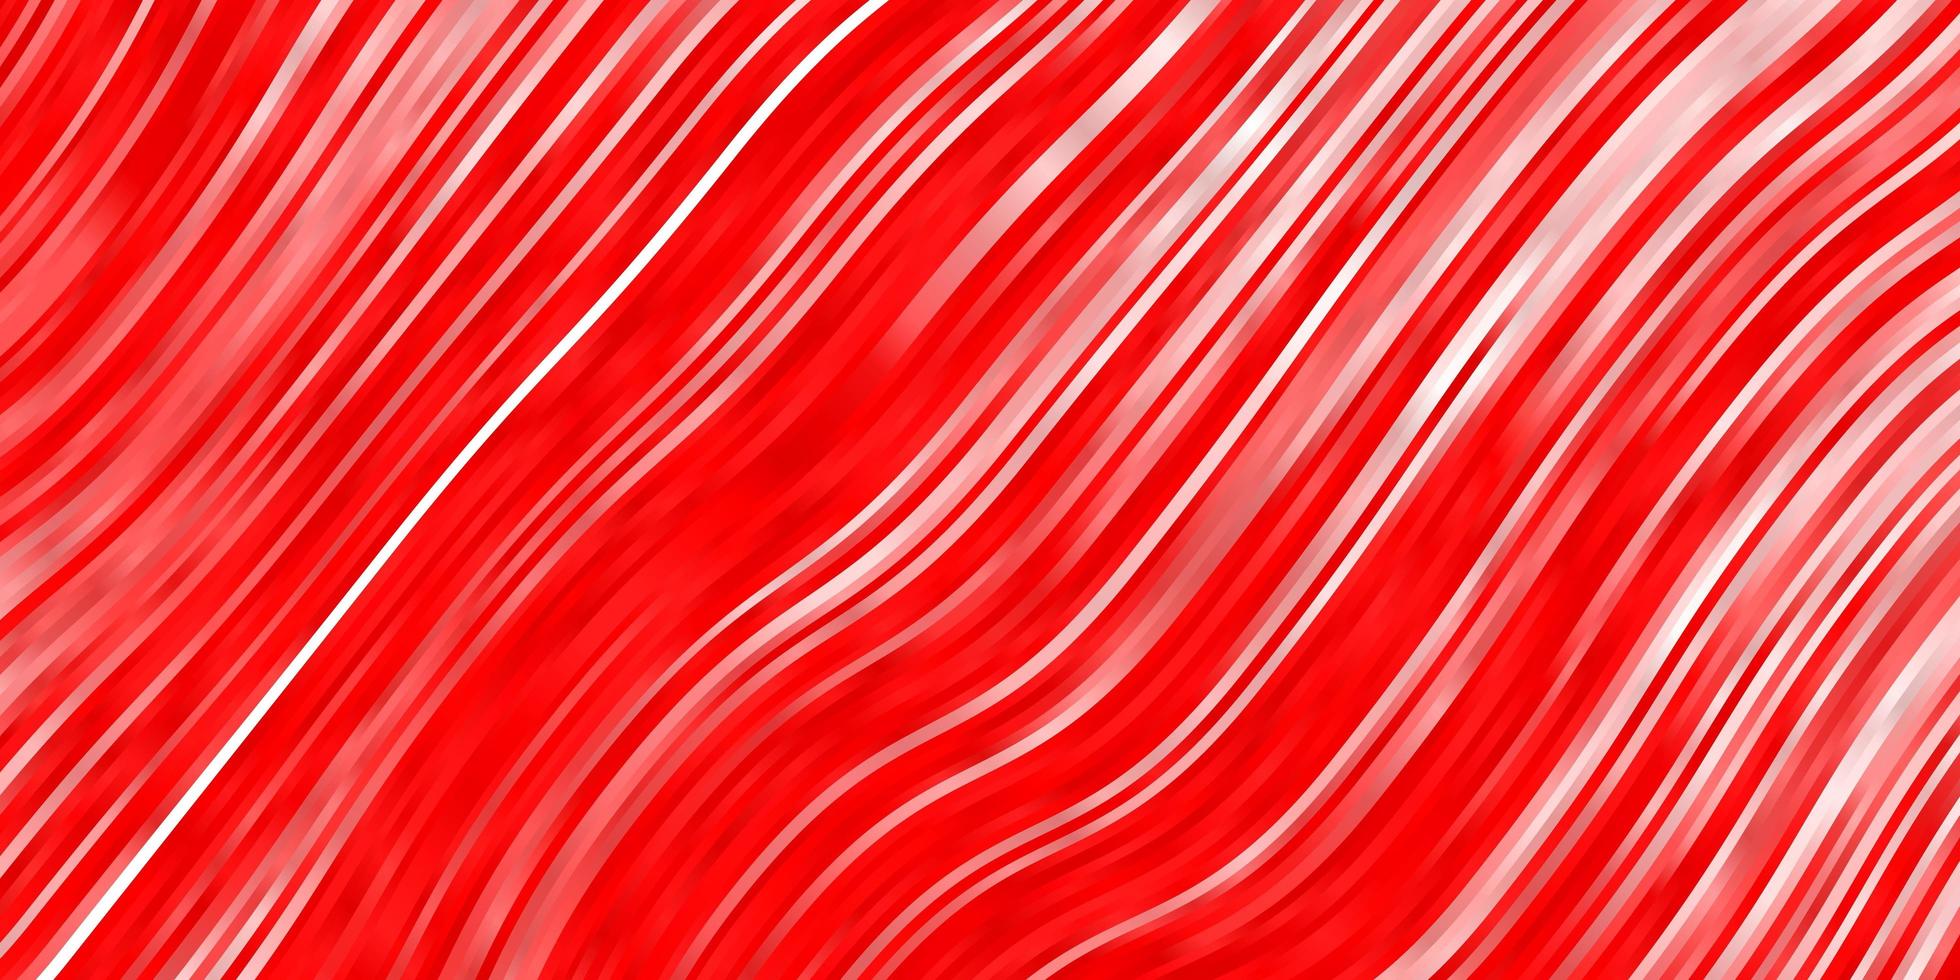 motif vectoriel rouge clair avec des lignes tordues